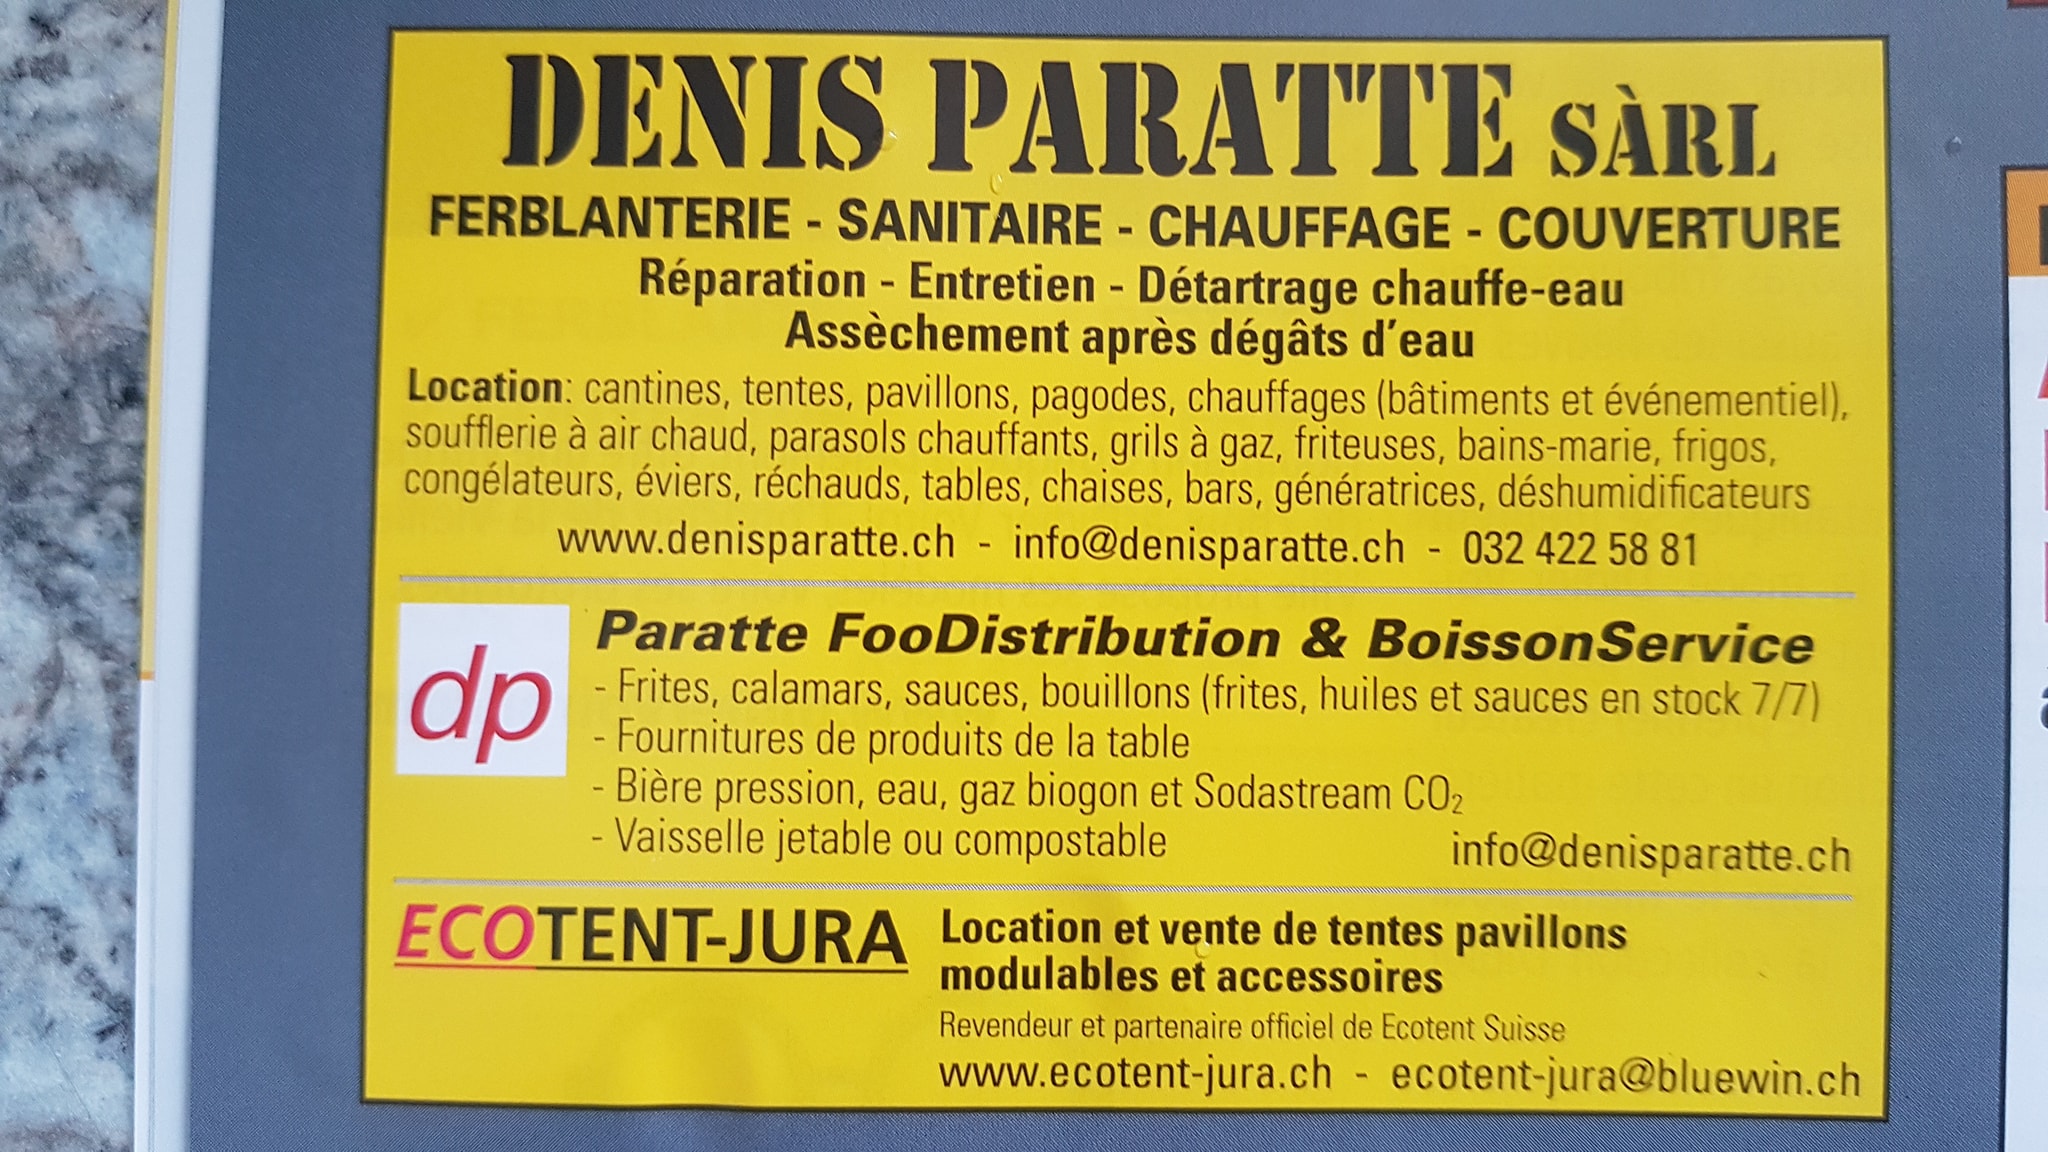 Ferblanterie - sanitaire - chauffage - couverture - Denis Paratte Sàrl